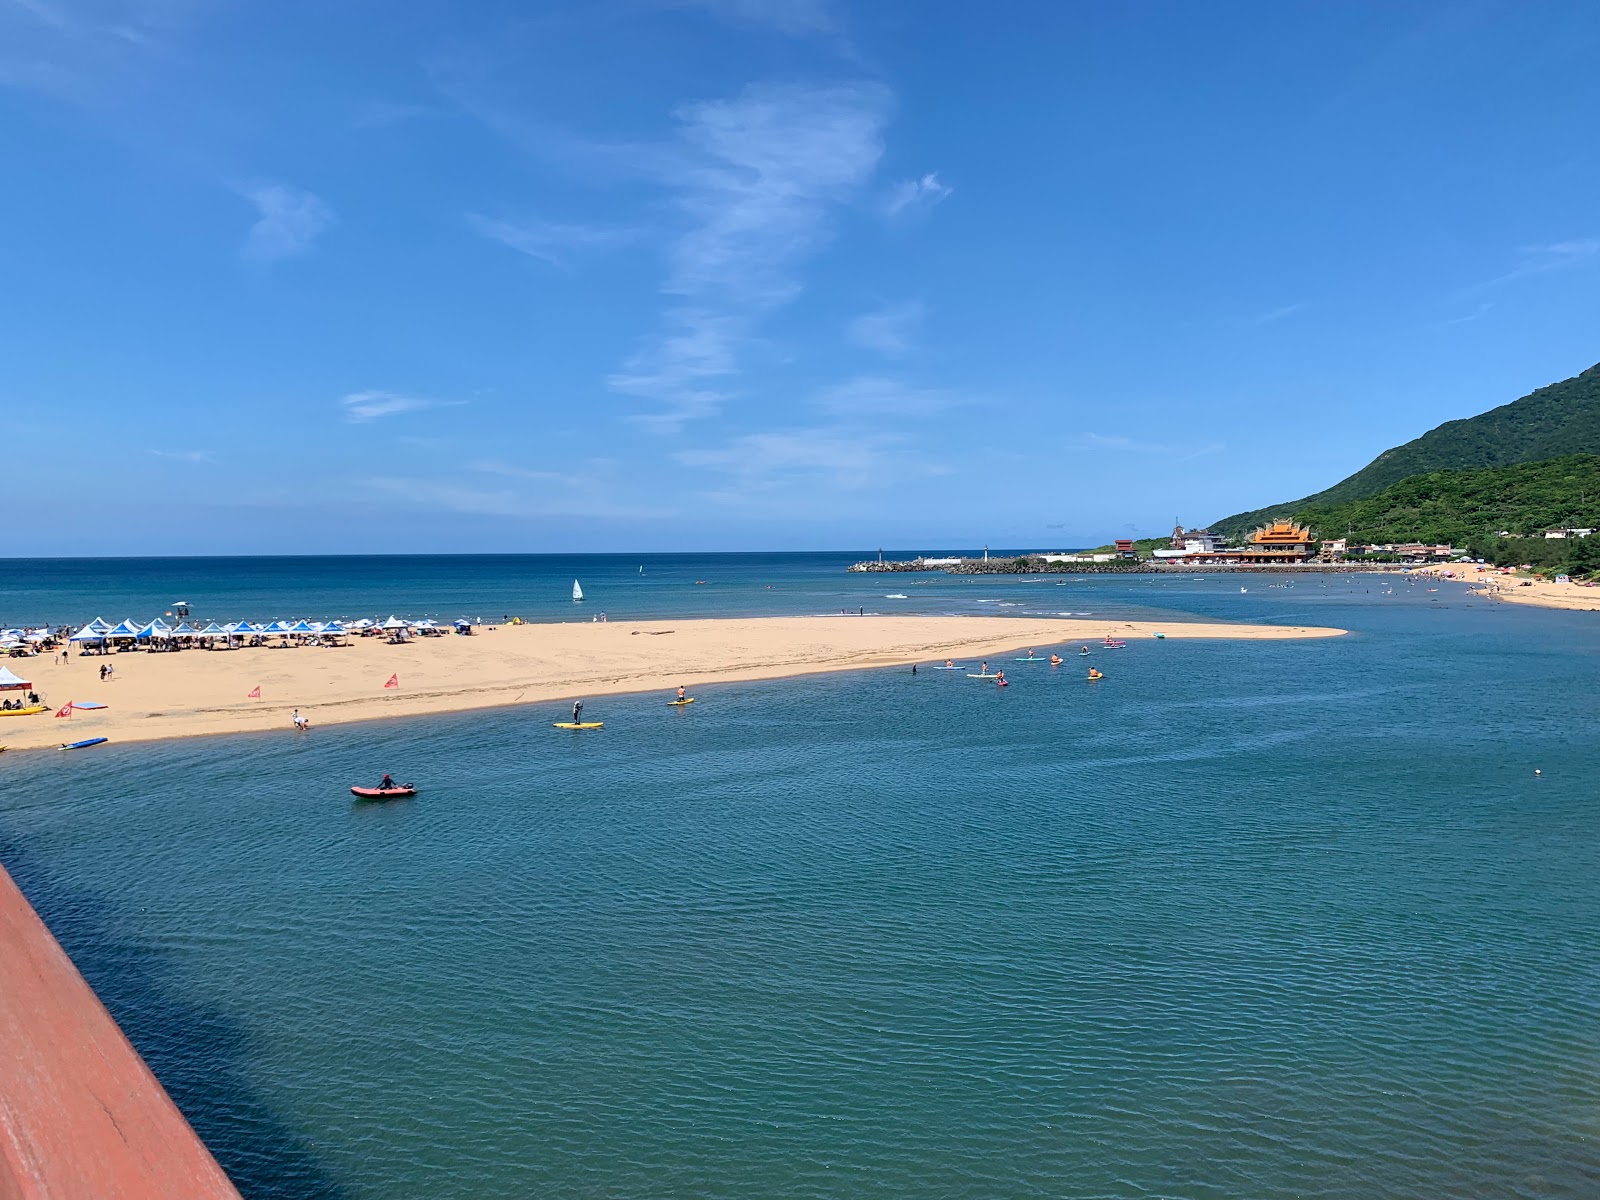 Fulong Beach'in fotoğrafı geniş plaj ile birlikte